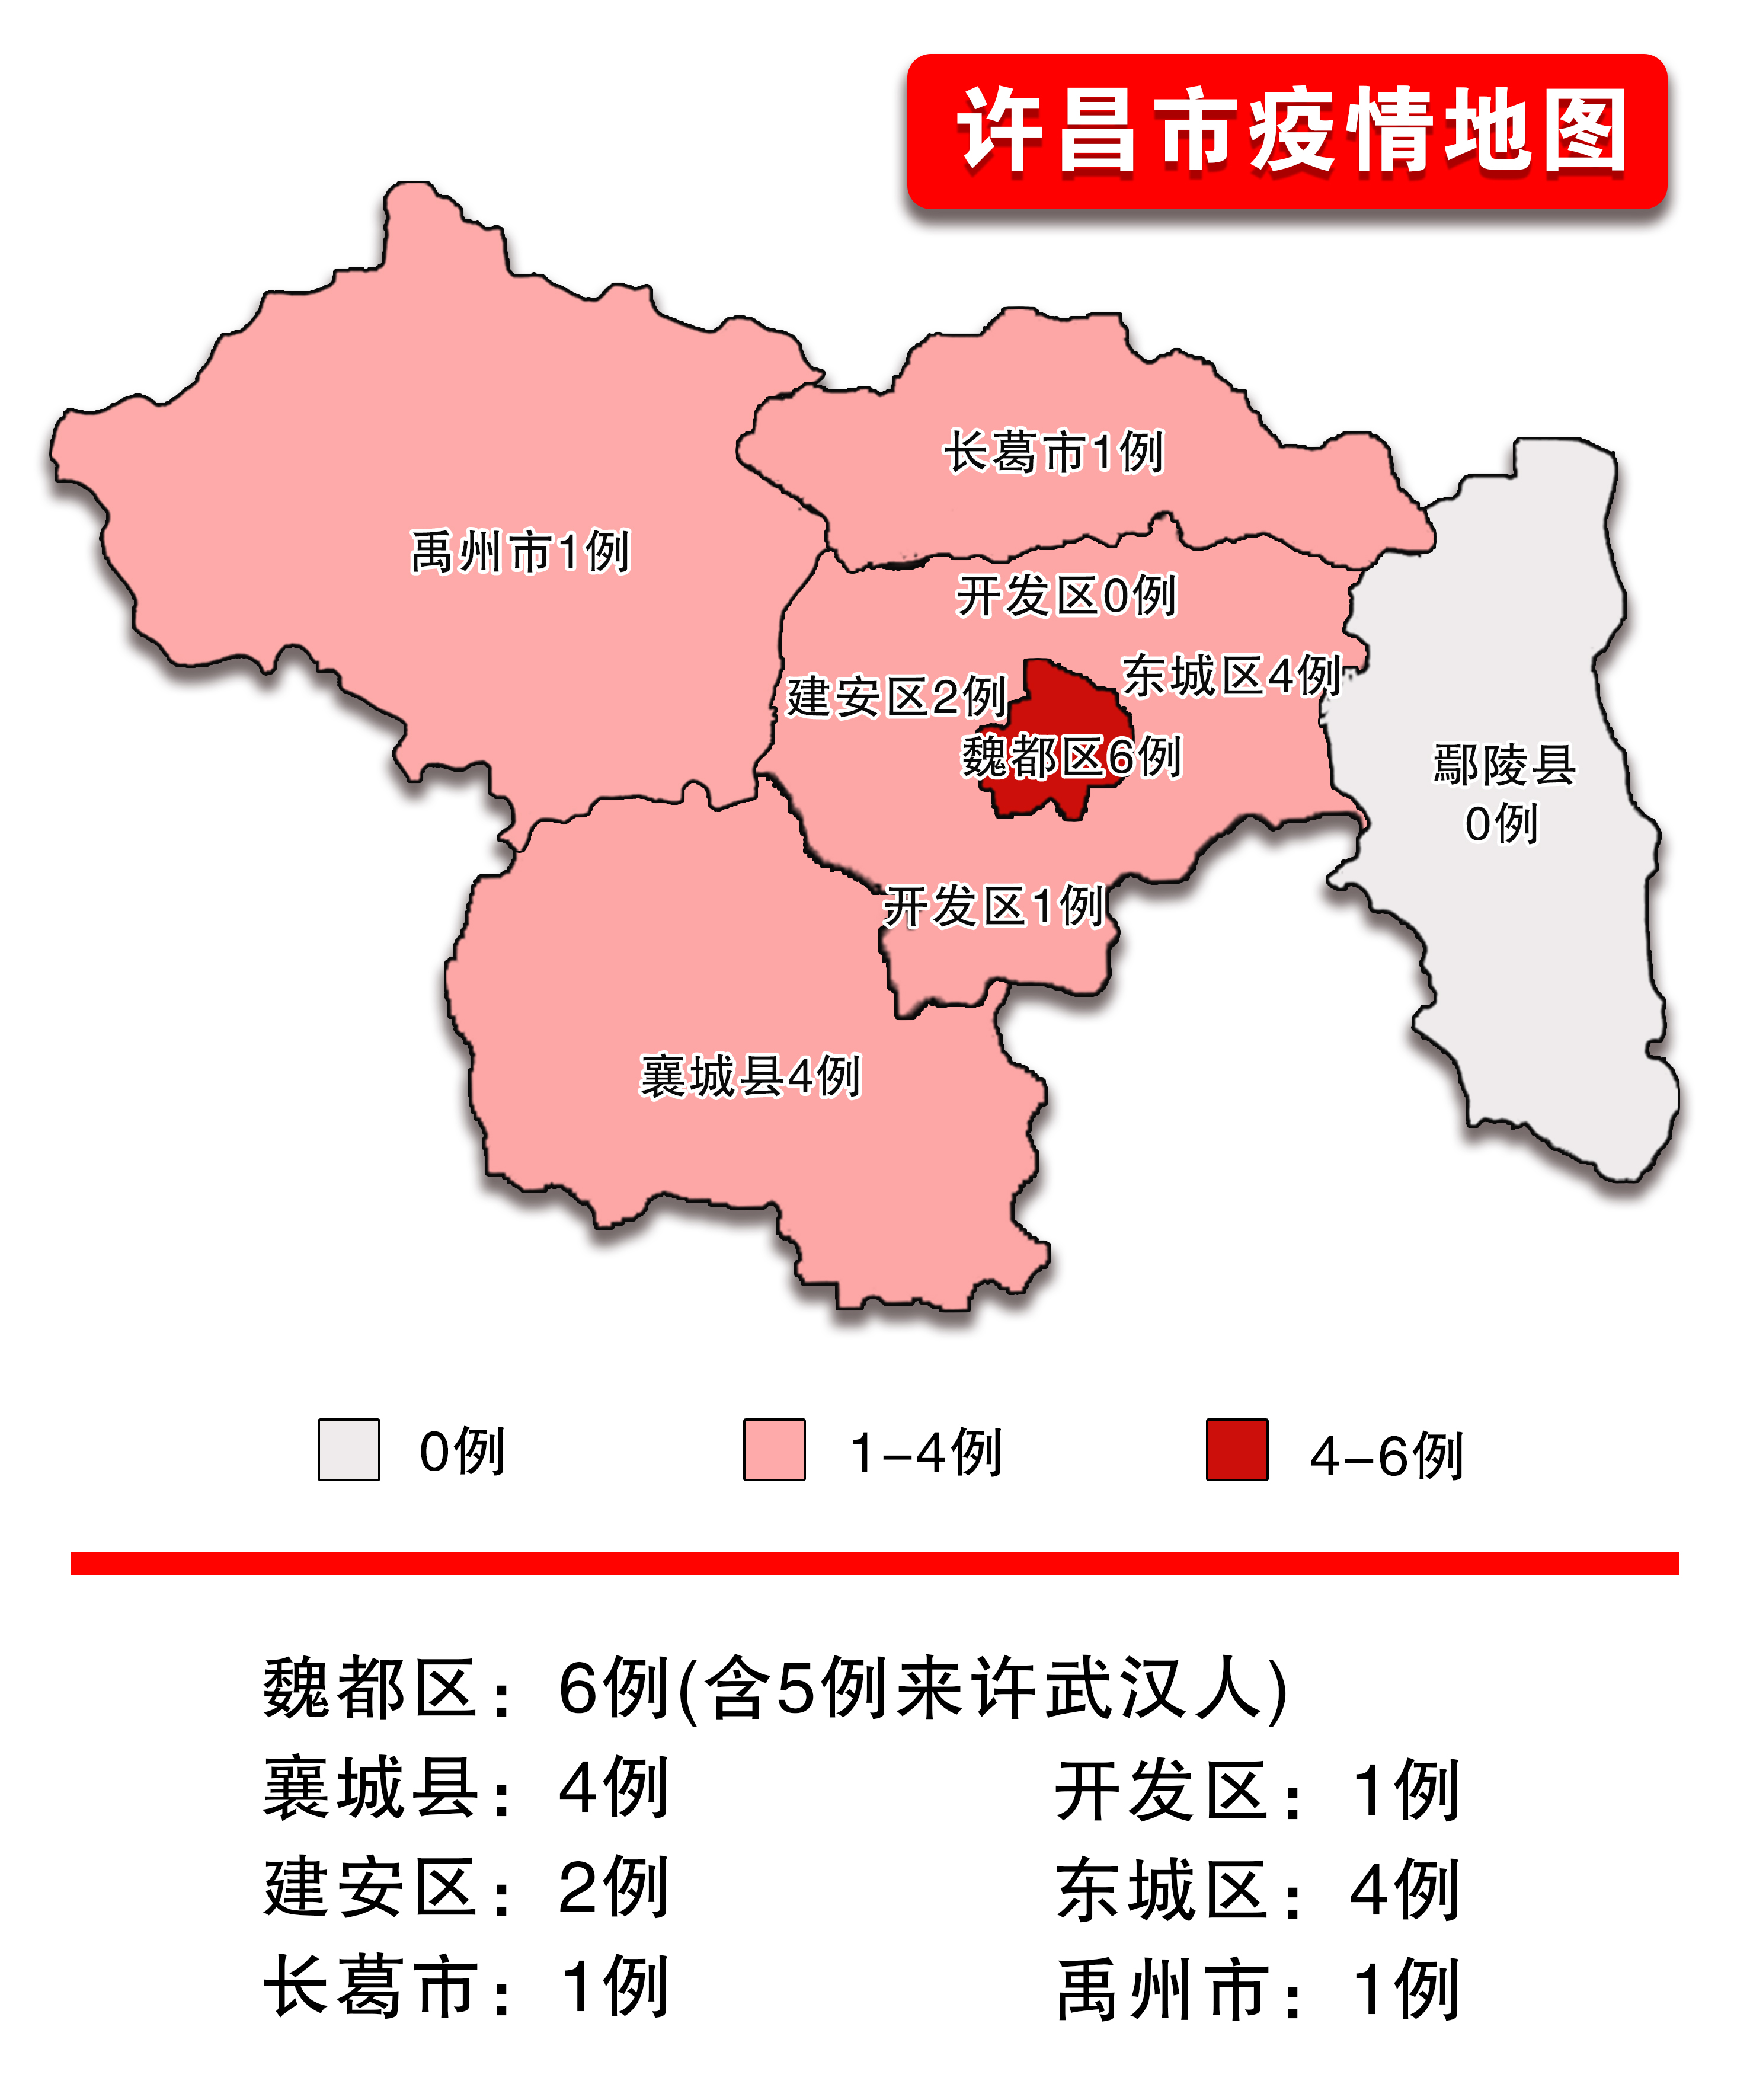 许昌市新增感染的肺炎确诊病例4例,累计19例